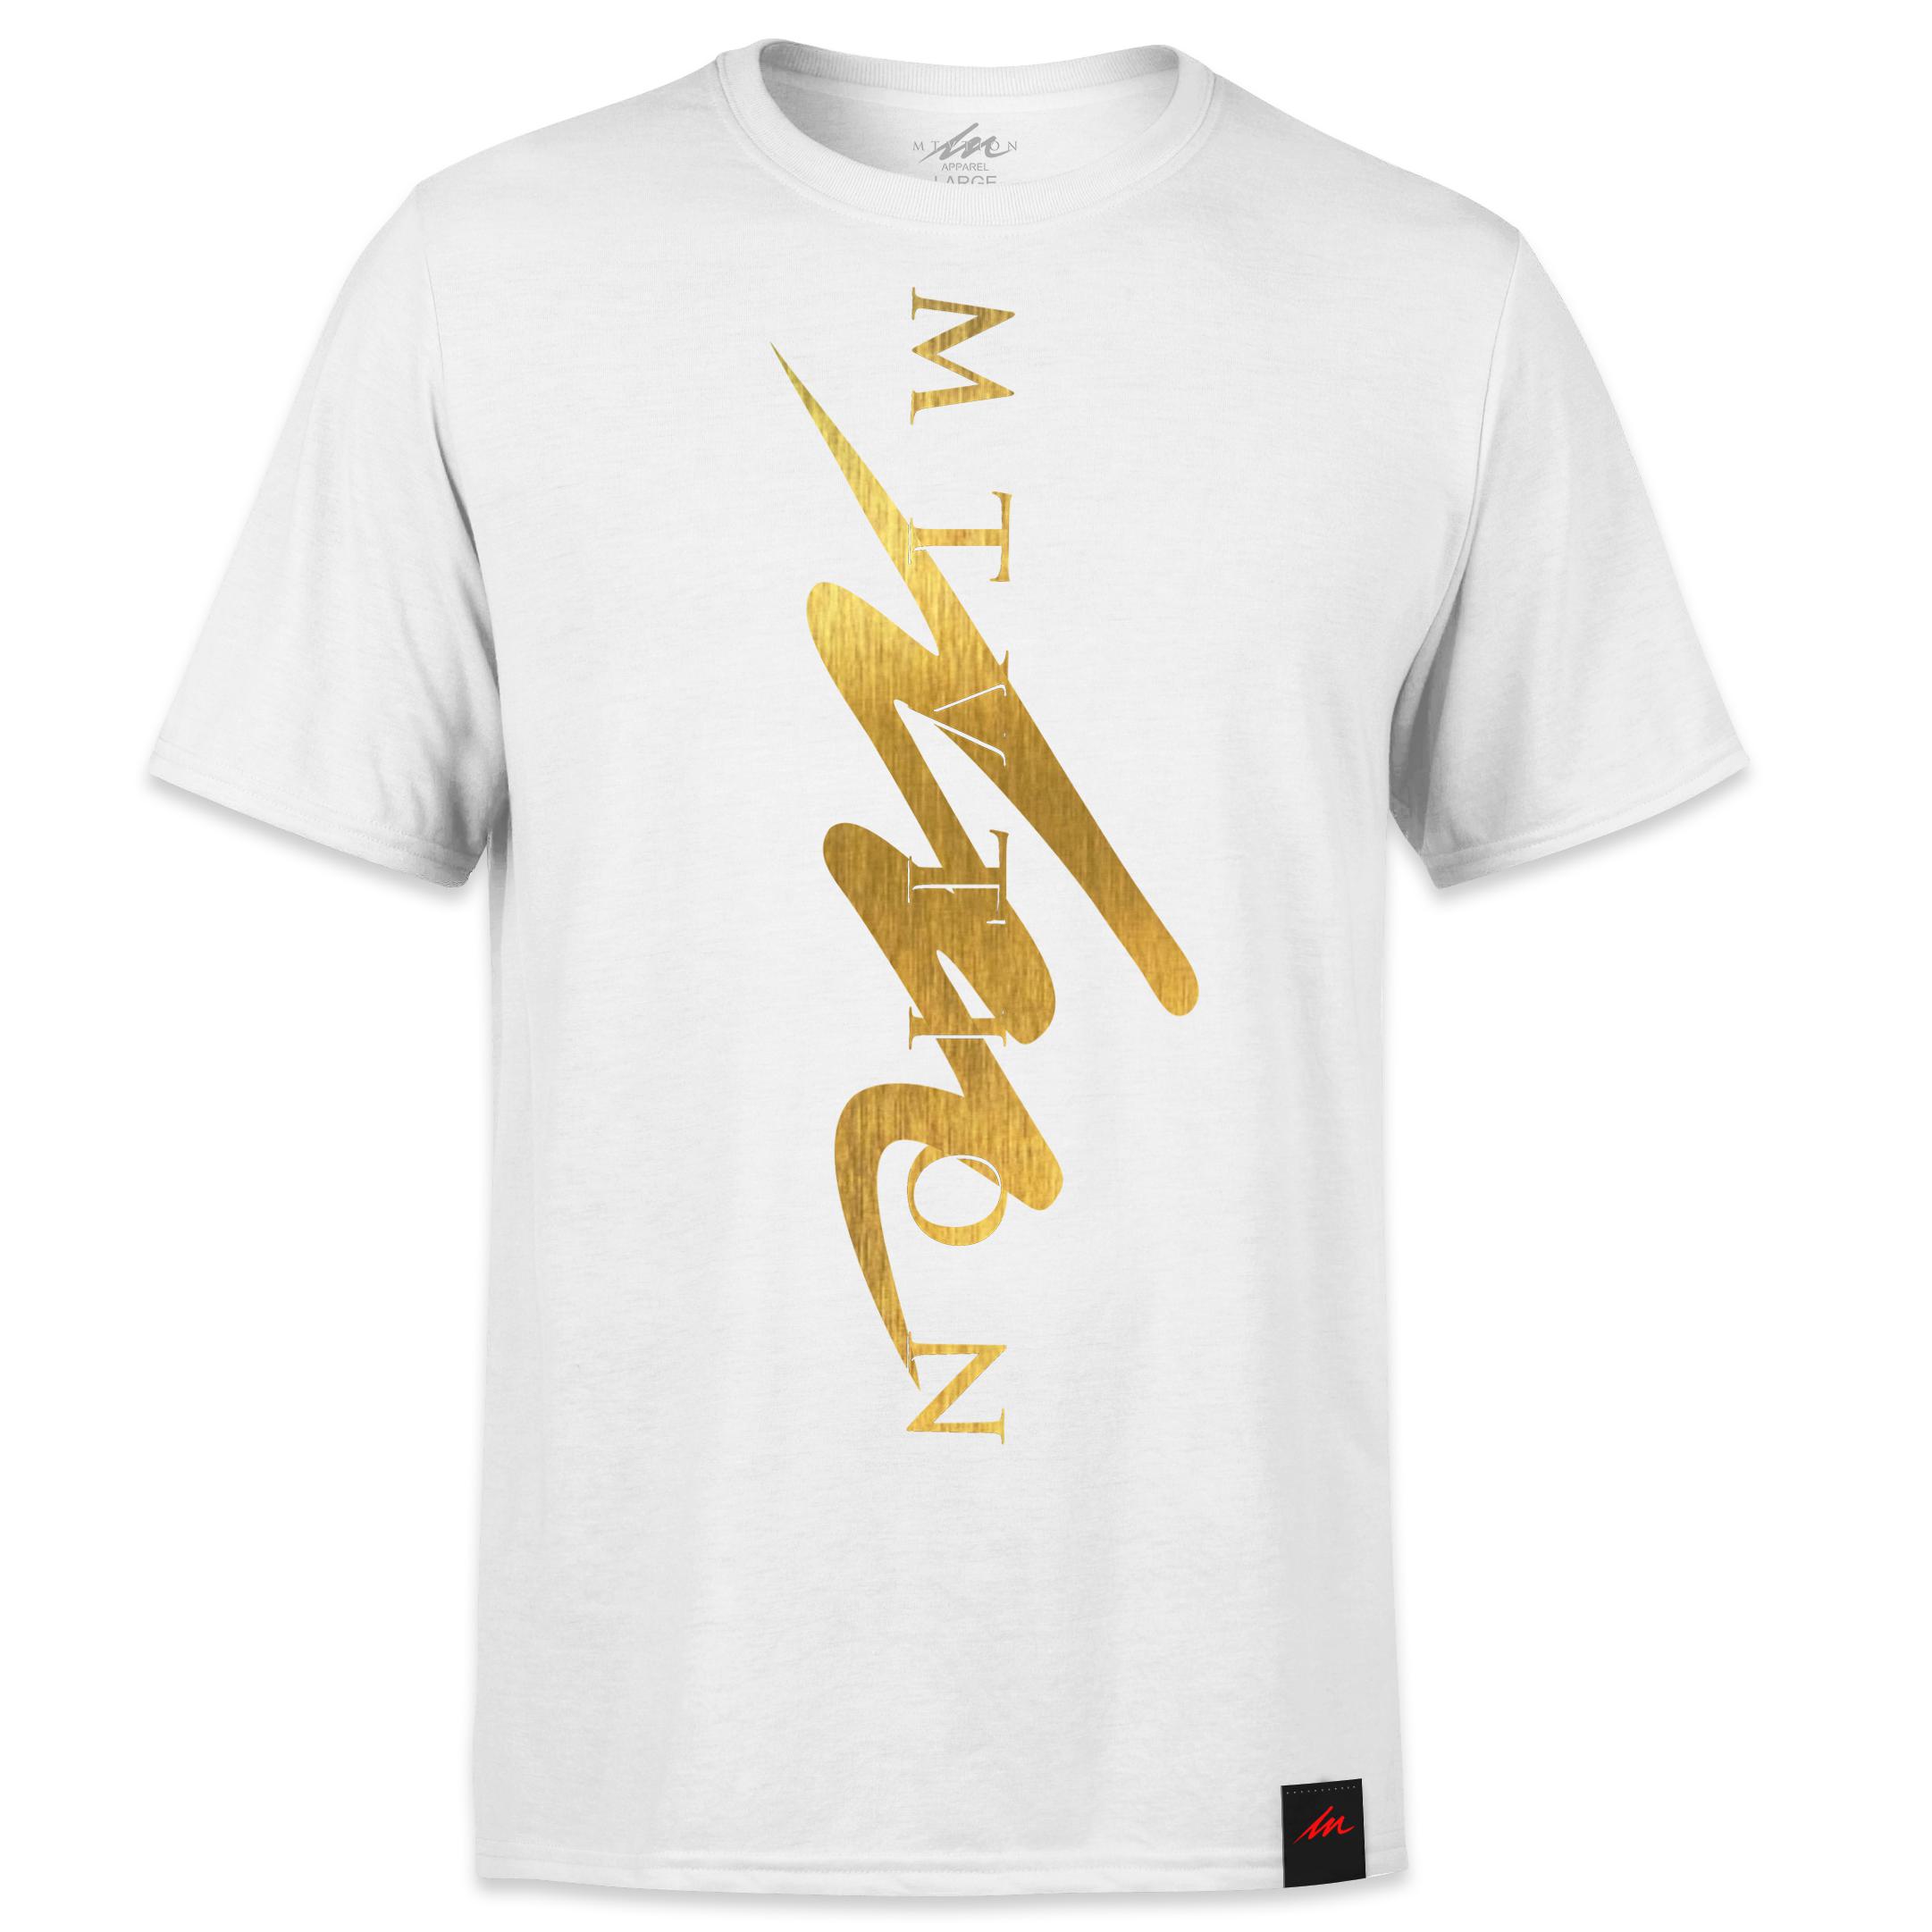 Goldmine MTVTION Sharp - White Shirt/Gold Foil-money_motivation_brand